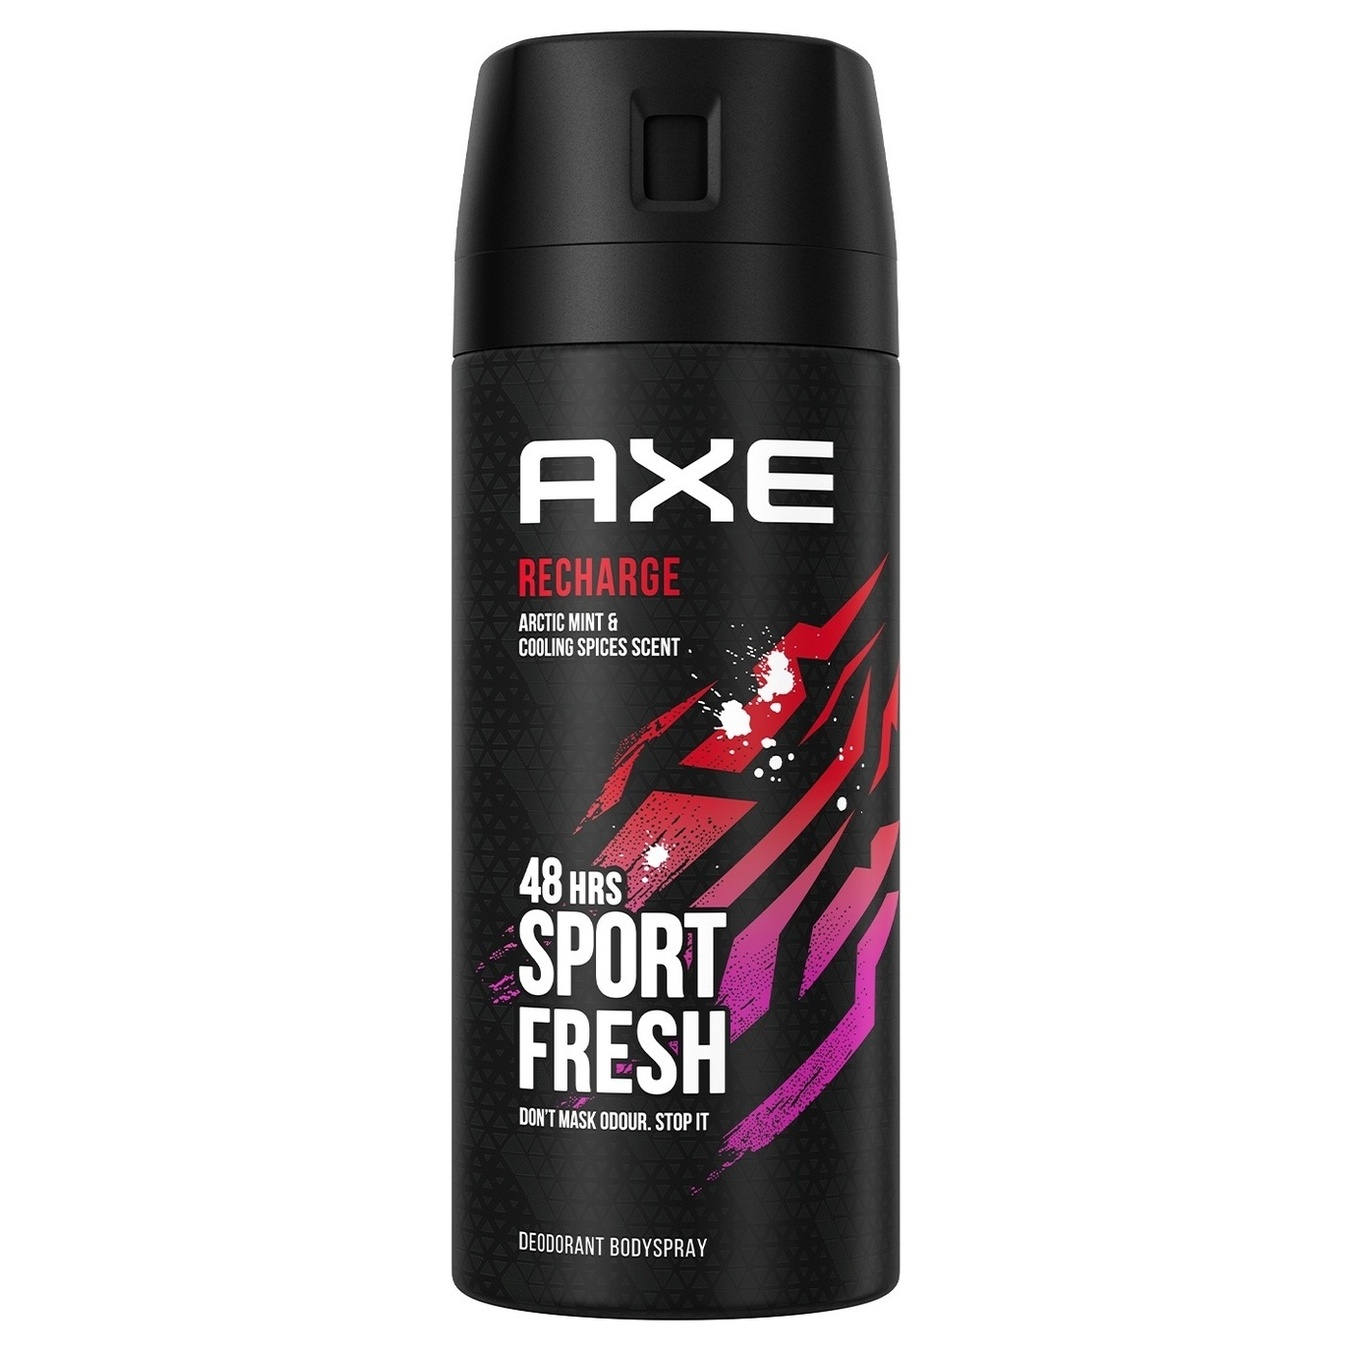 Дезодорант Axe Recharge аромат арктической мяты и охлаждающих специй 150мл